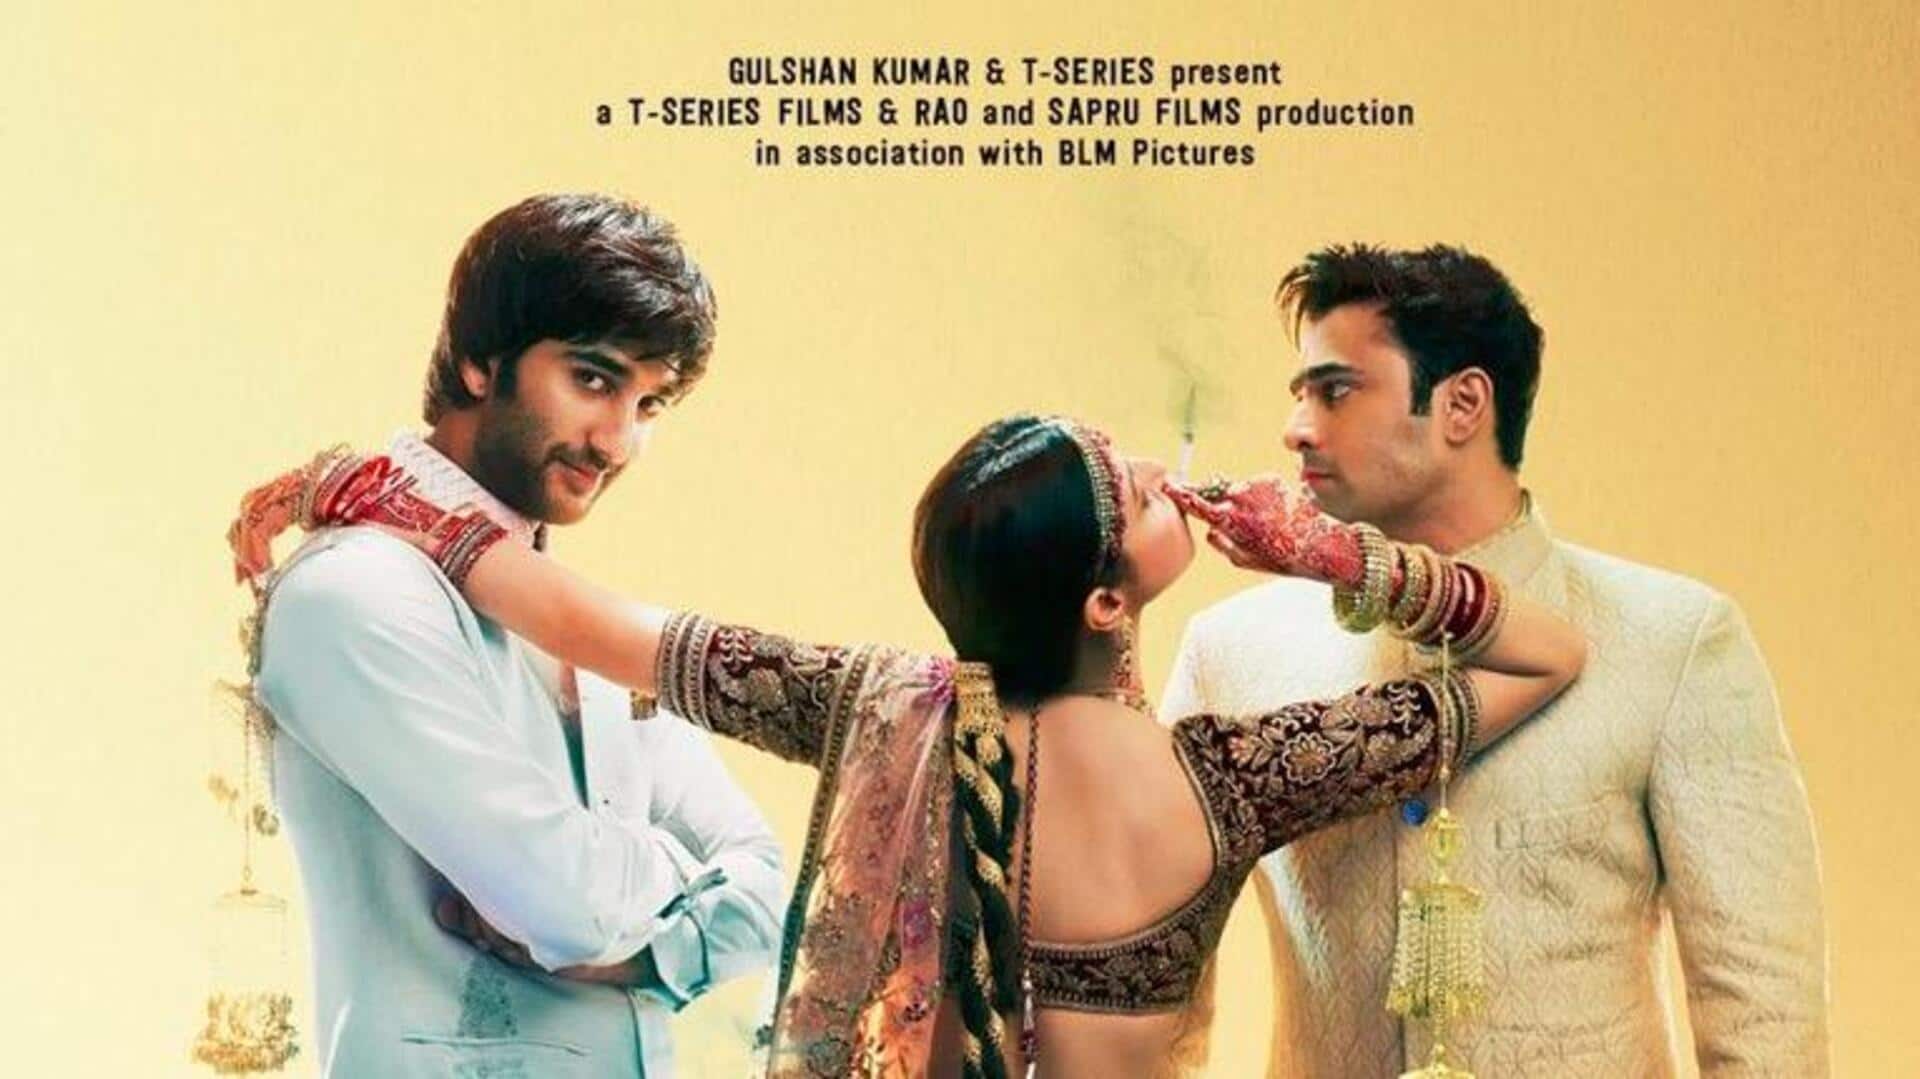 दिव्या खोसला कुमार की 'यारियां 2' का टीजर जारी, इस दिन सिनेमाघरों में दस्तक देगी फिल्म 